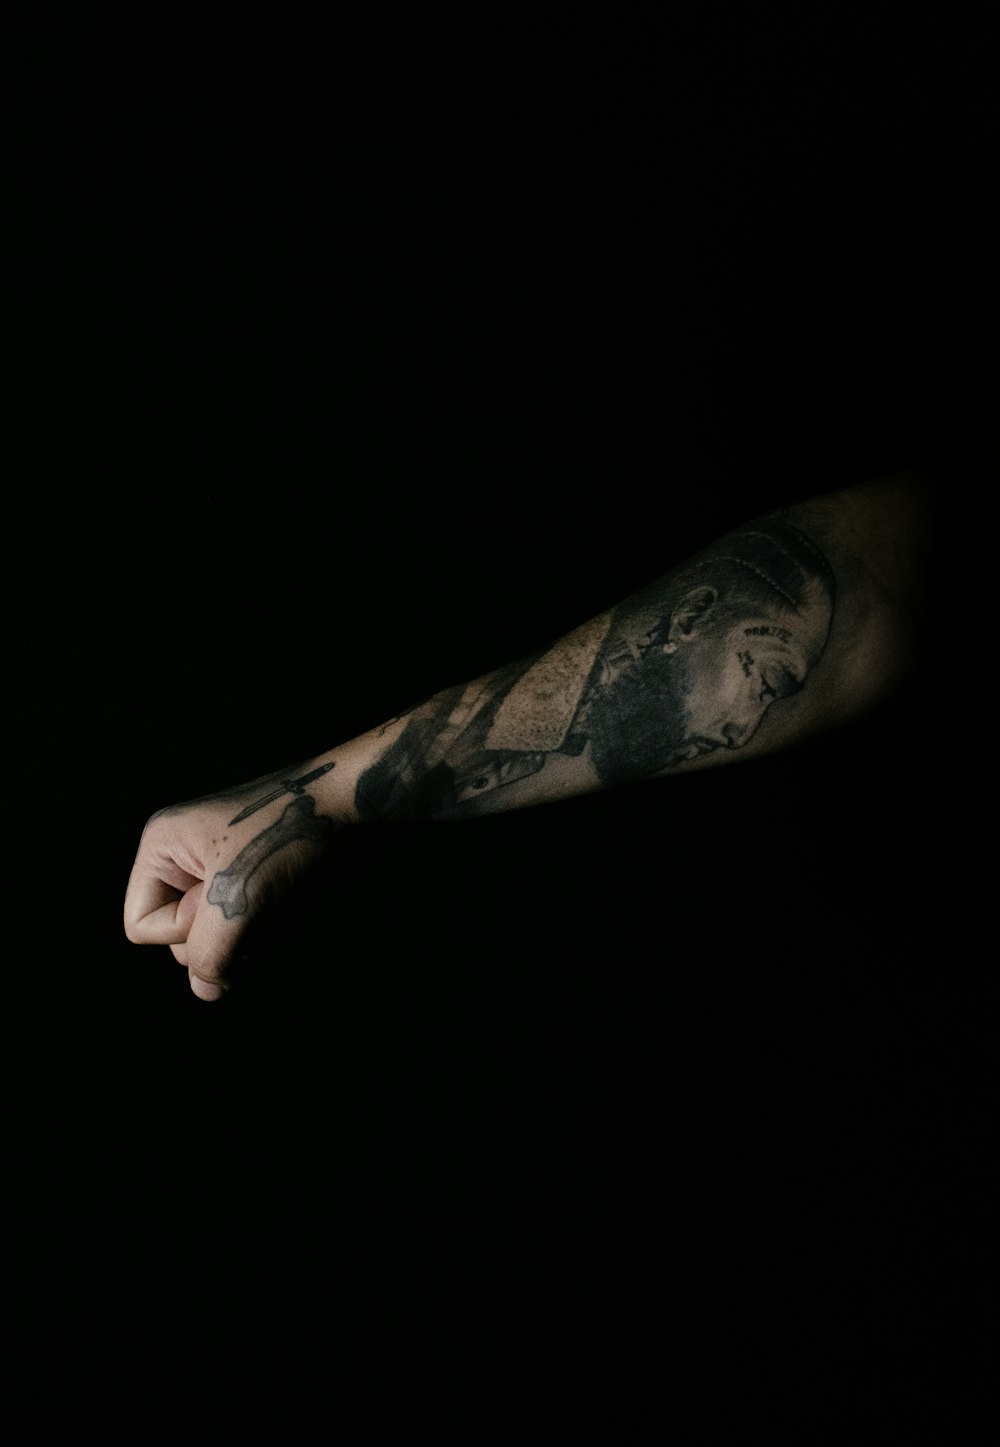 o braço de um homem com uma tatuagem sobre ele